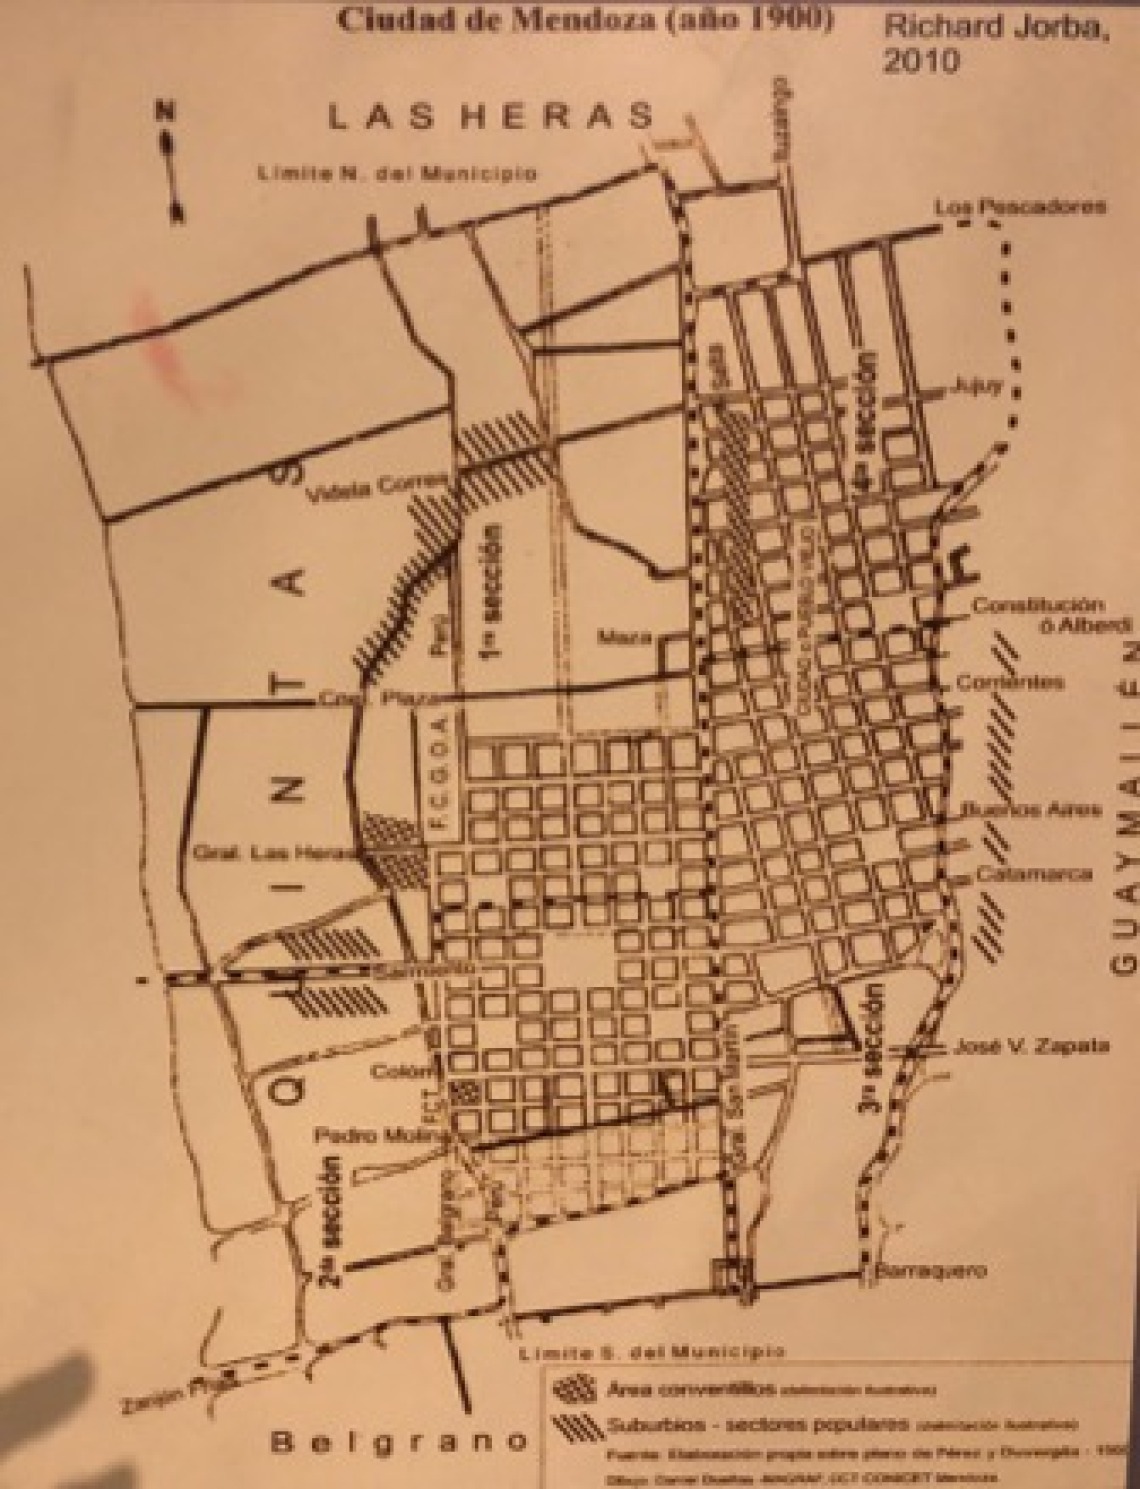 Plan of Mendoza in 1900 